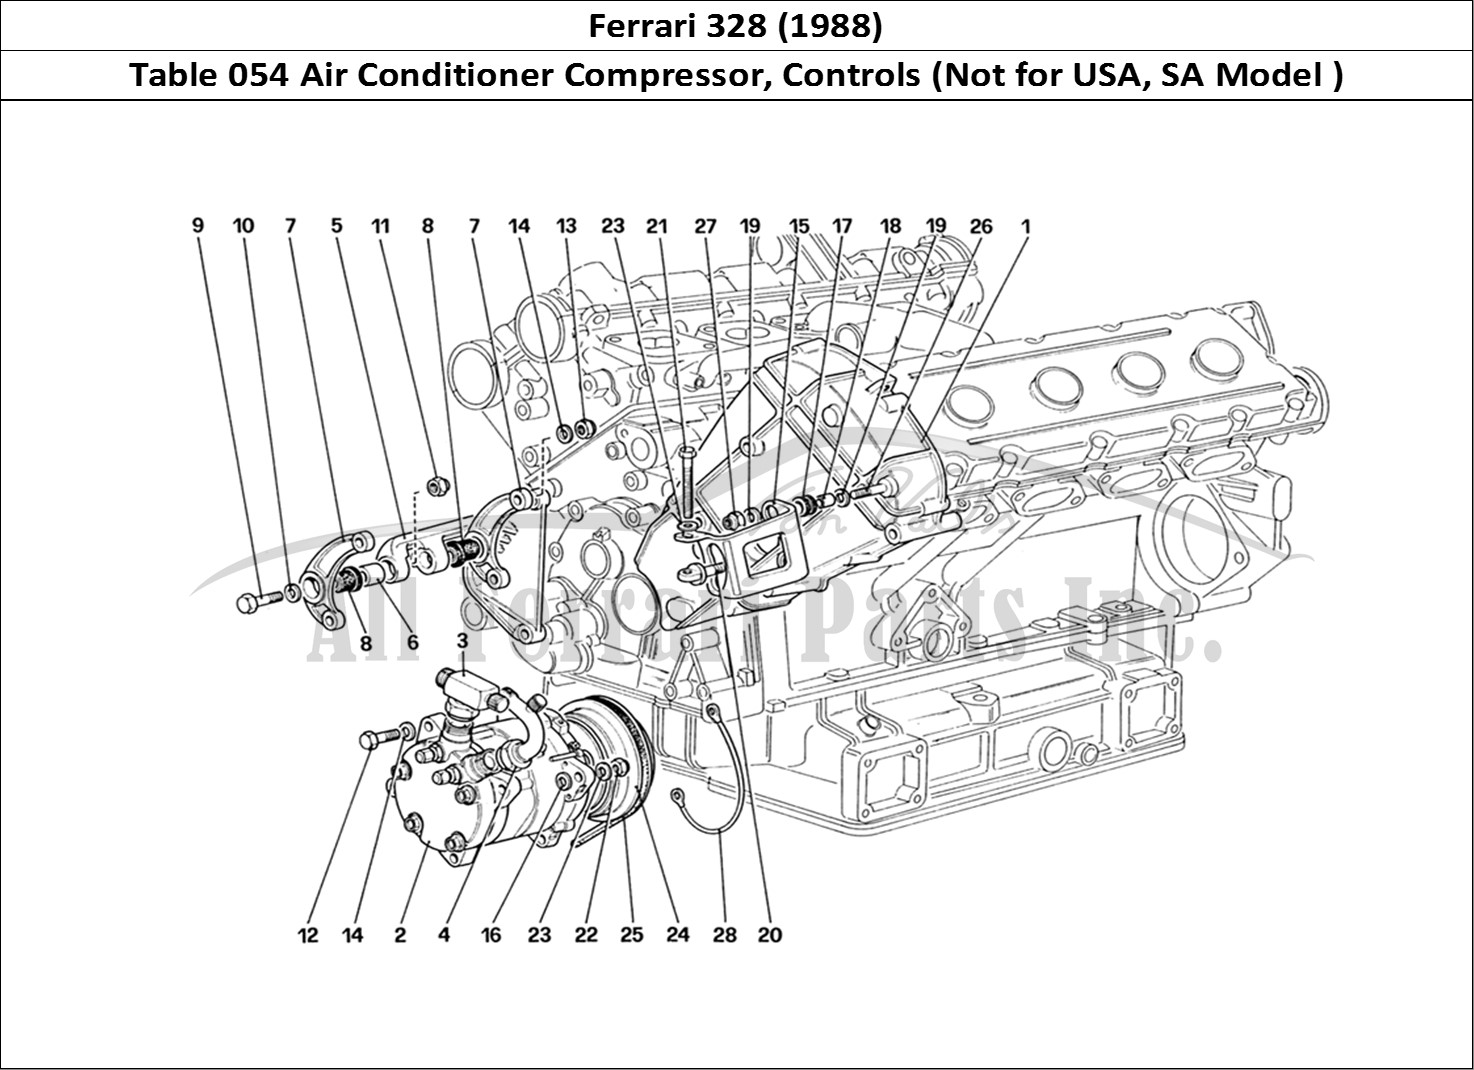 Ferrari Parts Ferrari 328 (1988) Page 054 Air Conditioning Compress